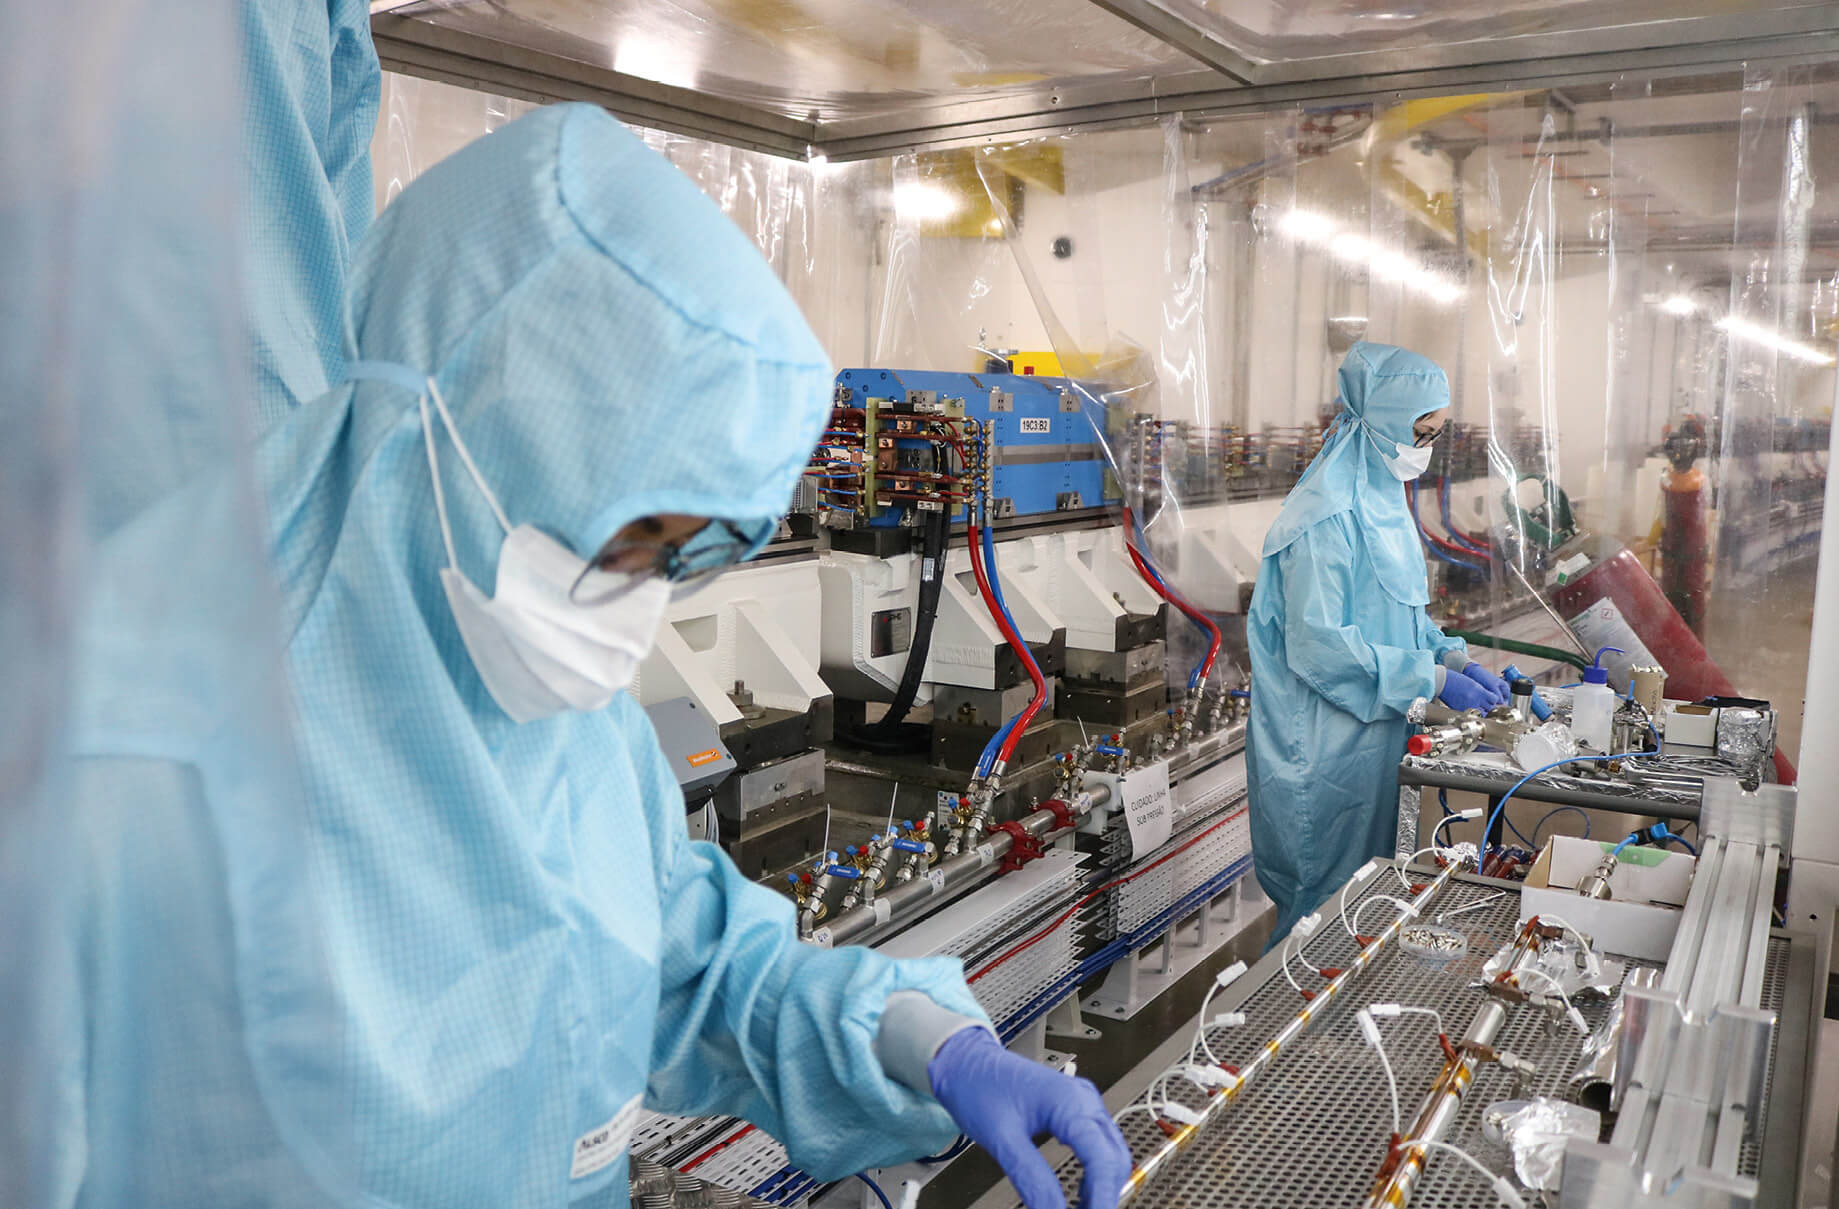 The image shows laboratory staff installing the vacuum system in one of Project Sirius’s particle accelerators.